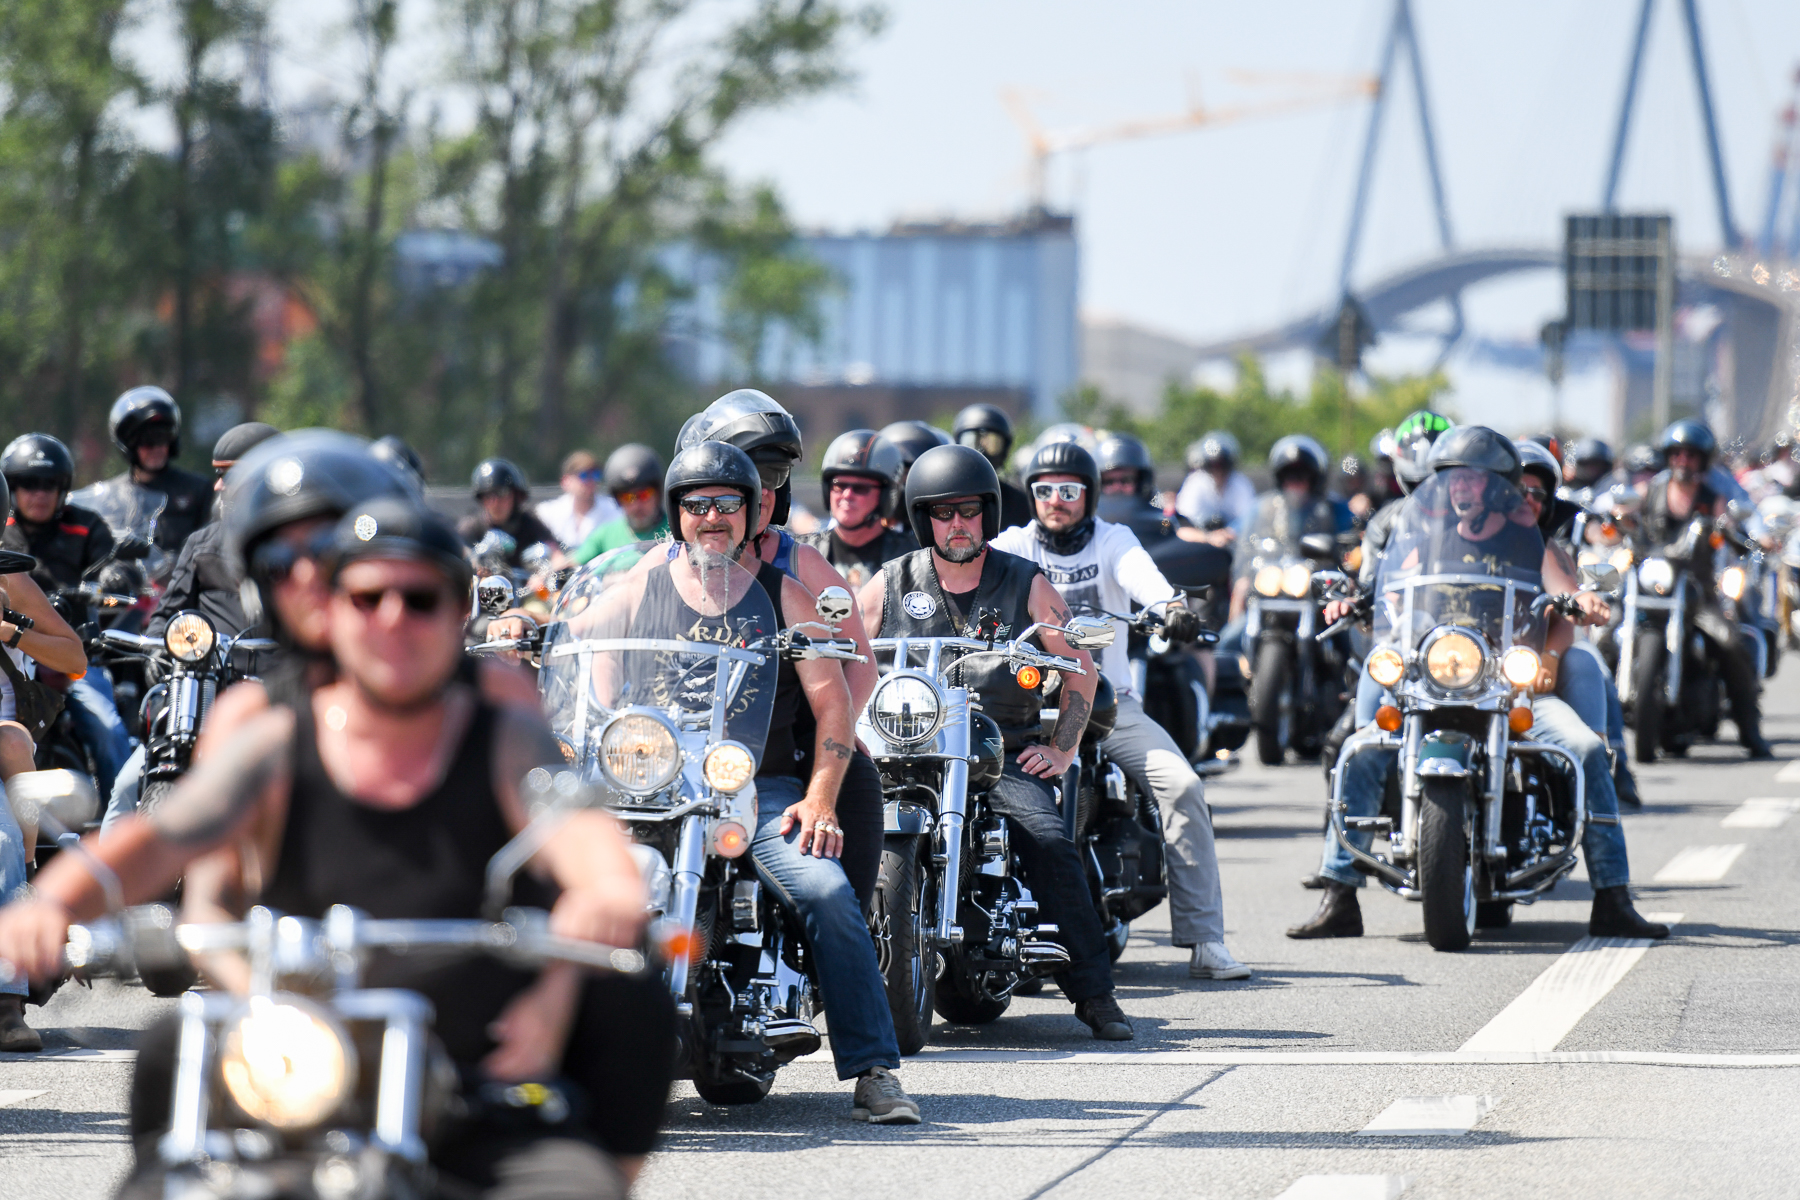 Harley Days Hamburg 2022, Harley Davidson, Großneumarkt, Hamburg, Event, Biker, Motorräder, Shows, Musik, Konzerte, Heidi vom Lande, Berichterstattung